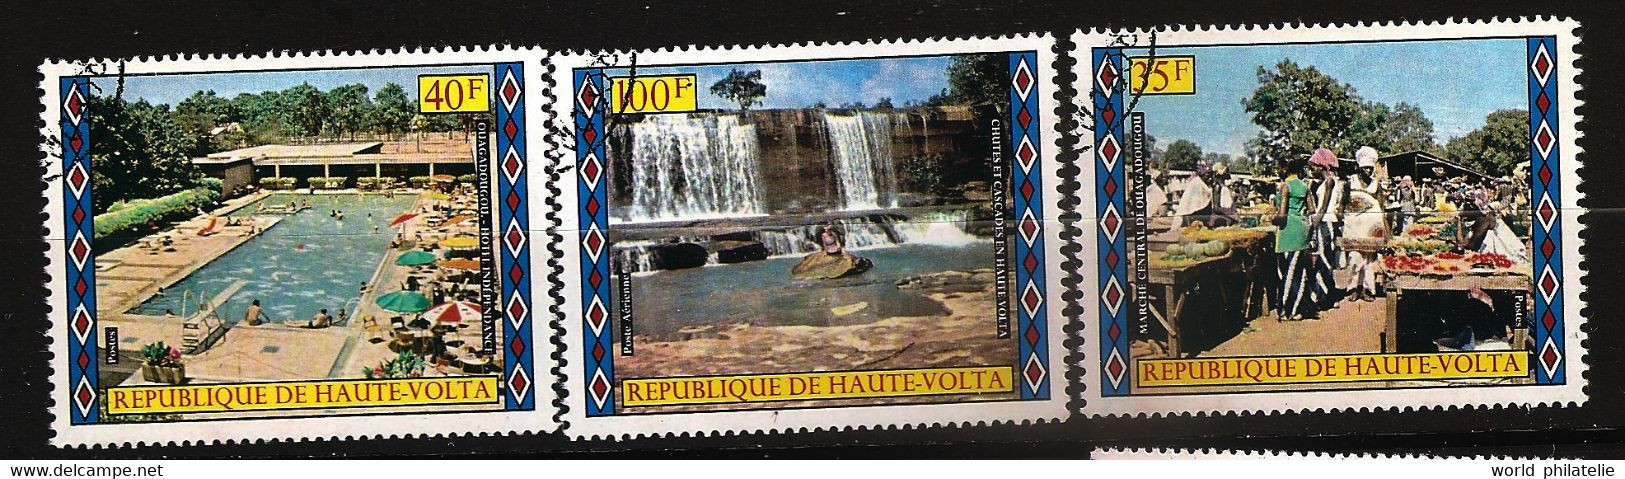 Haute Volta 1973 N° 292 / 3 + PA 164 O Marché, Ouagadougou, Hôtel, Cascade, Piscine, Plongeoir, Fruits, Tourisme, Légume - Haute-Volta (1958-1984)